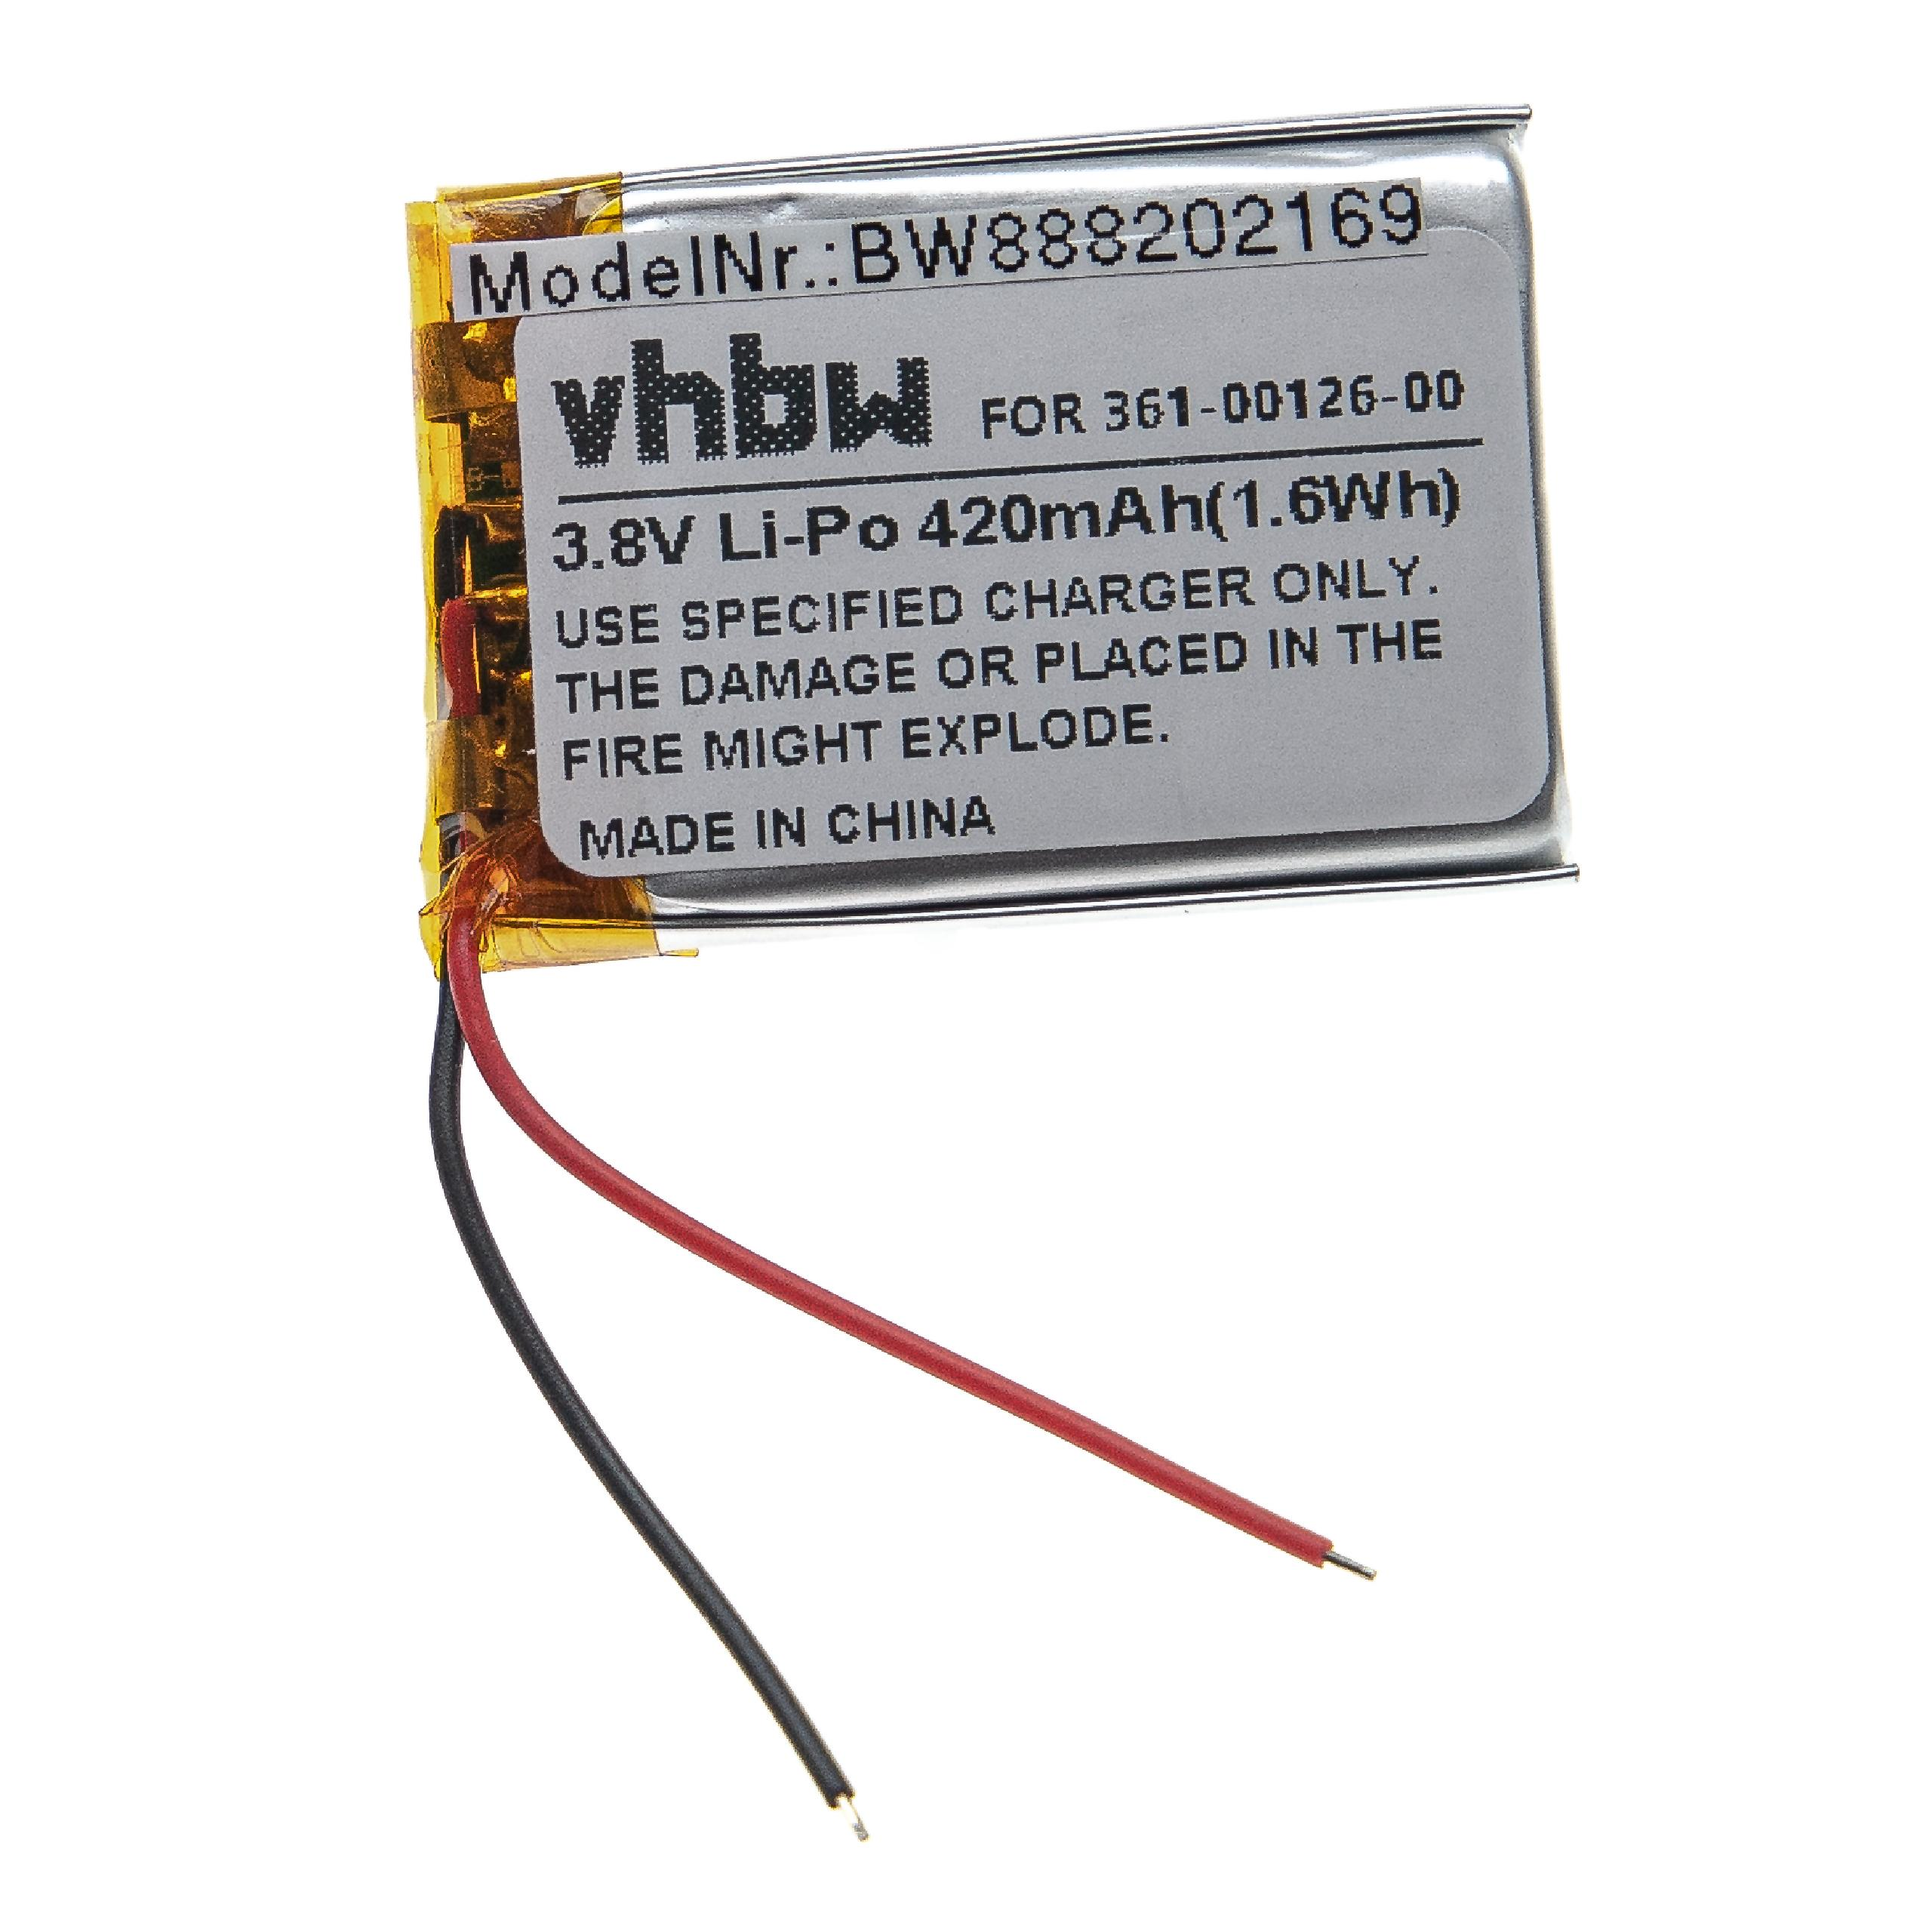 VHBW Ersatz für Garmin 3.8 - 361-00126-00 Volt, für Li-Polymer Smartwatch, Akku 420